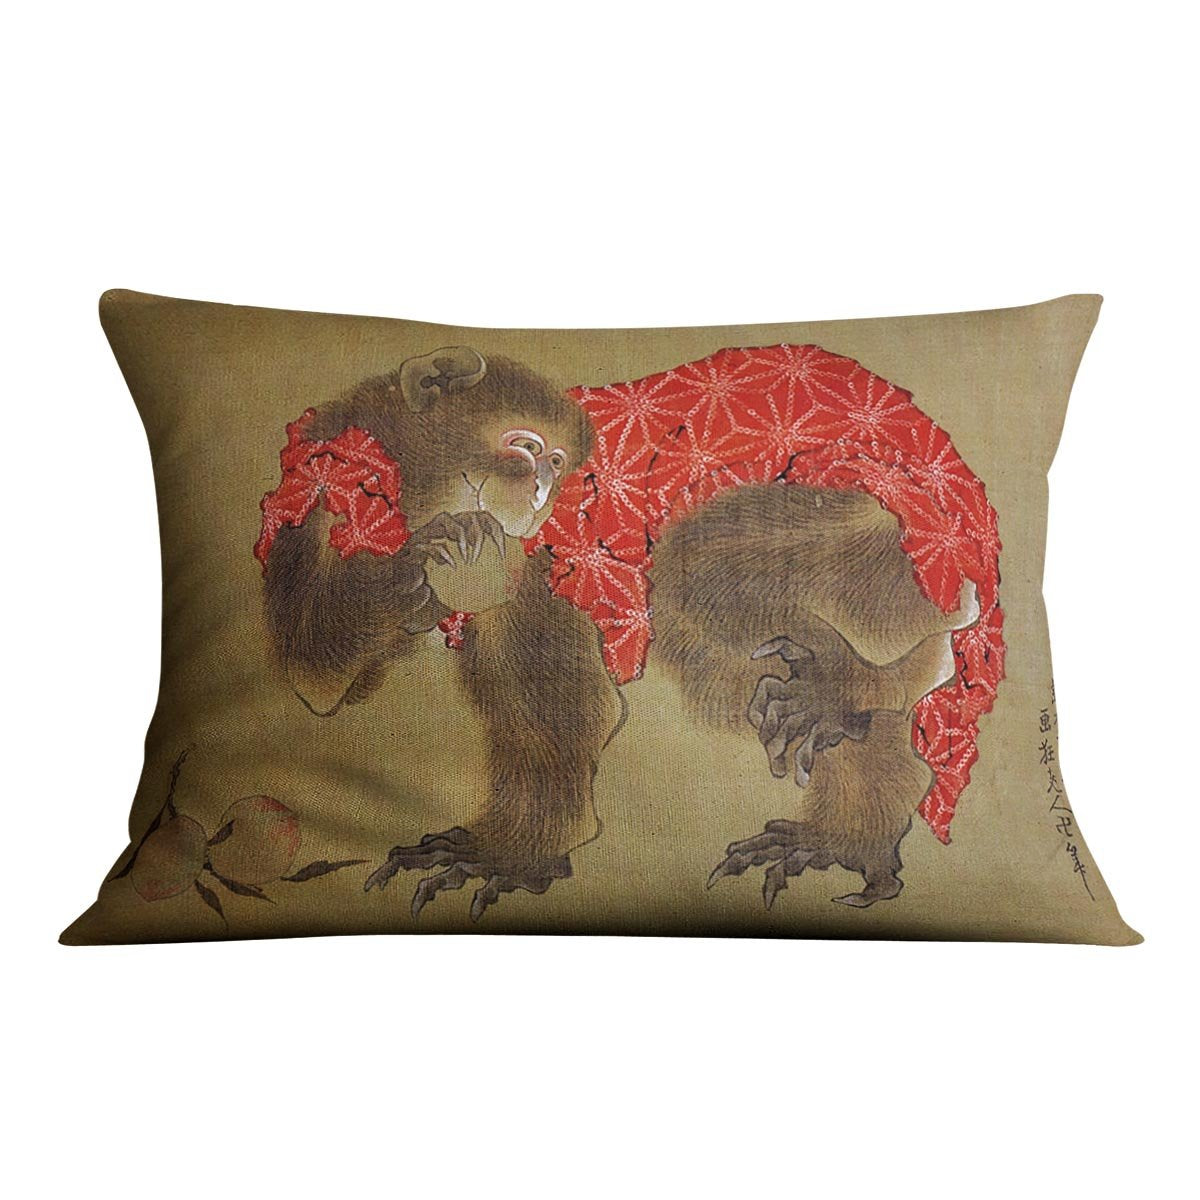 Monkey by Hokusai Throw Pillow